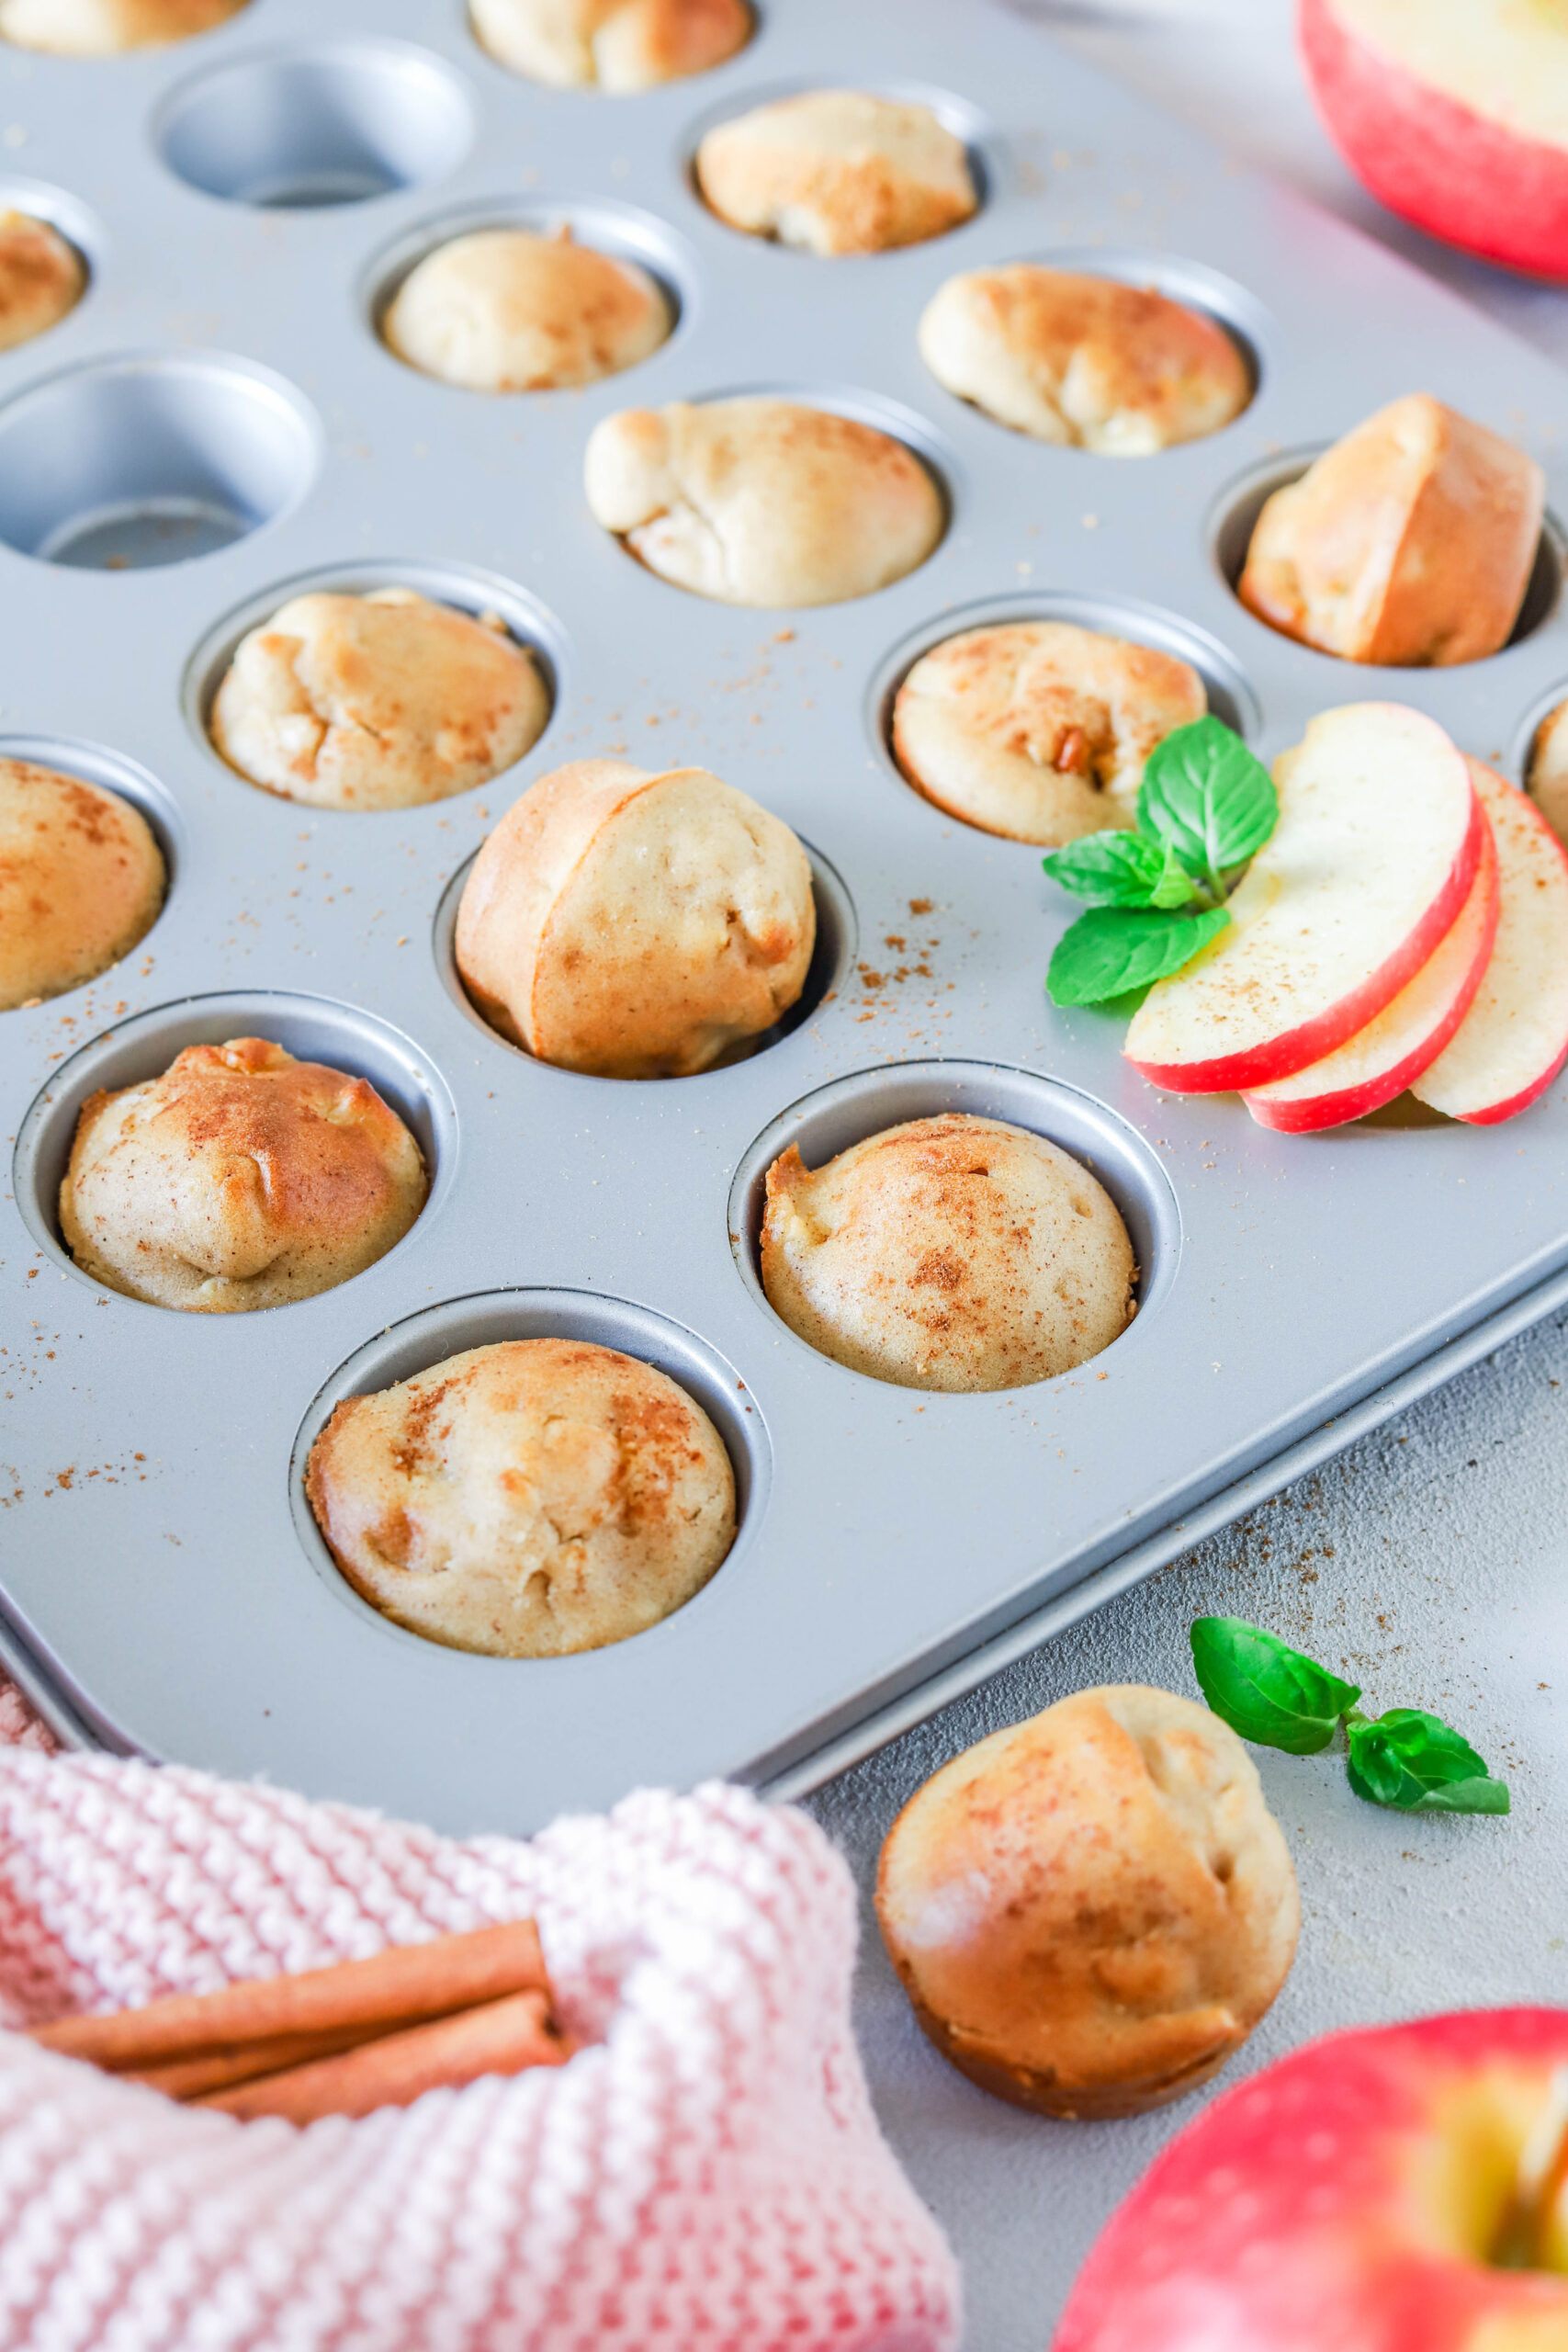 Lecker & gesund: Mini Muffins mit Apfel & Zimt. Super für Kita / Schule 